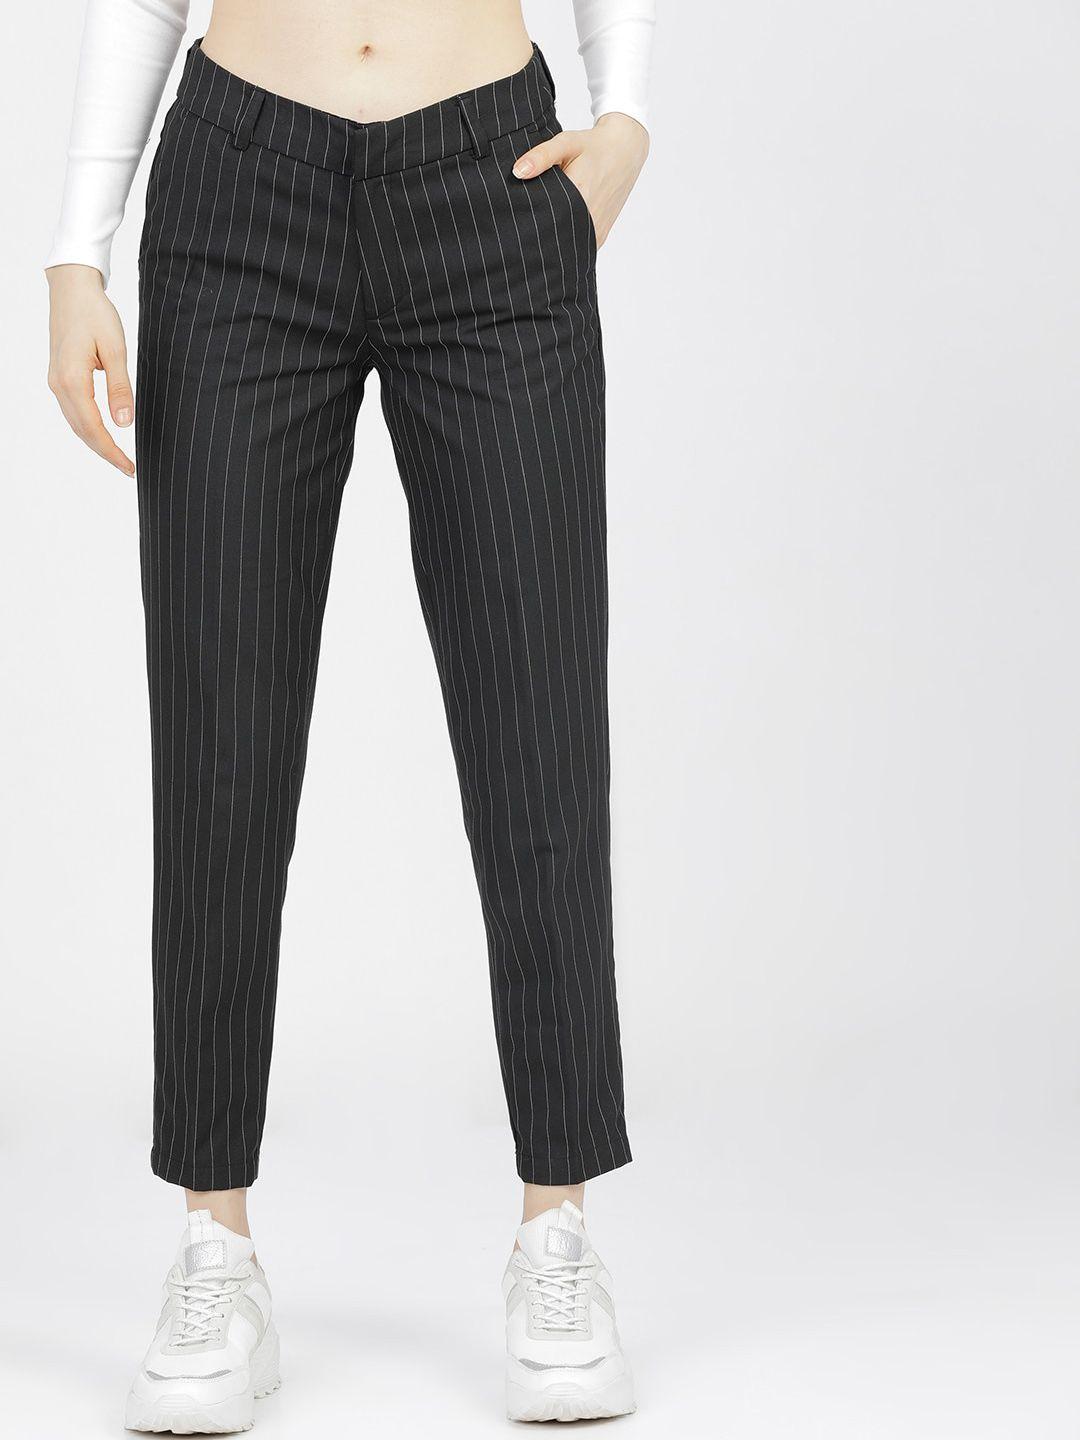 tokyo talkies women black striped trousers